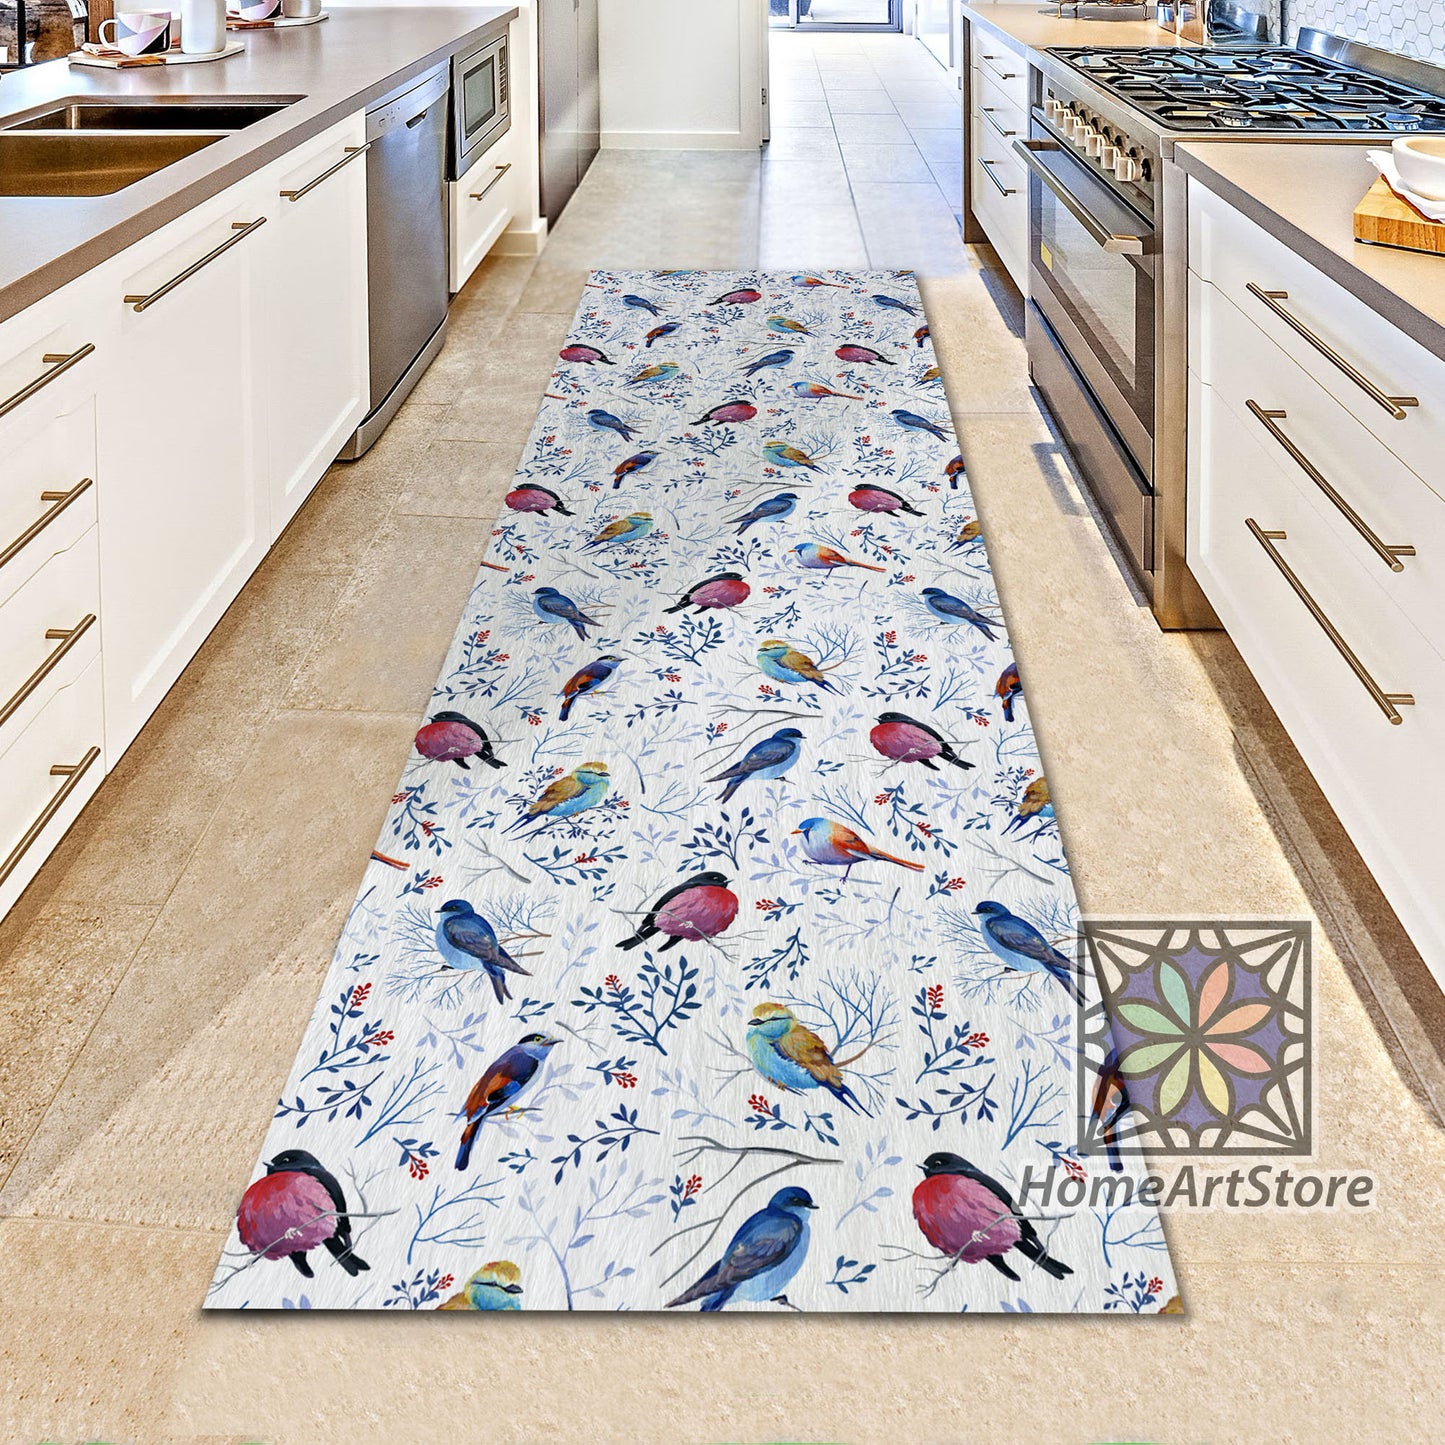 Birds and Leaves Pattern Runner Rug, Kitchen Runner Mat, Animal Hallway Runner Rug, Gift for Her